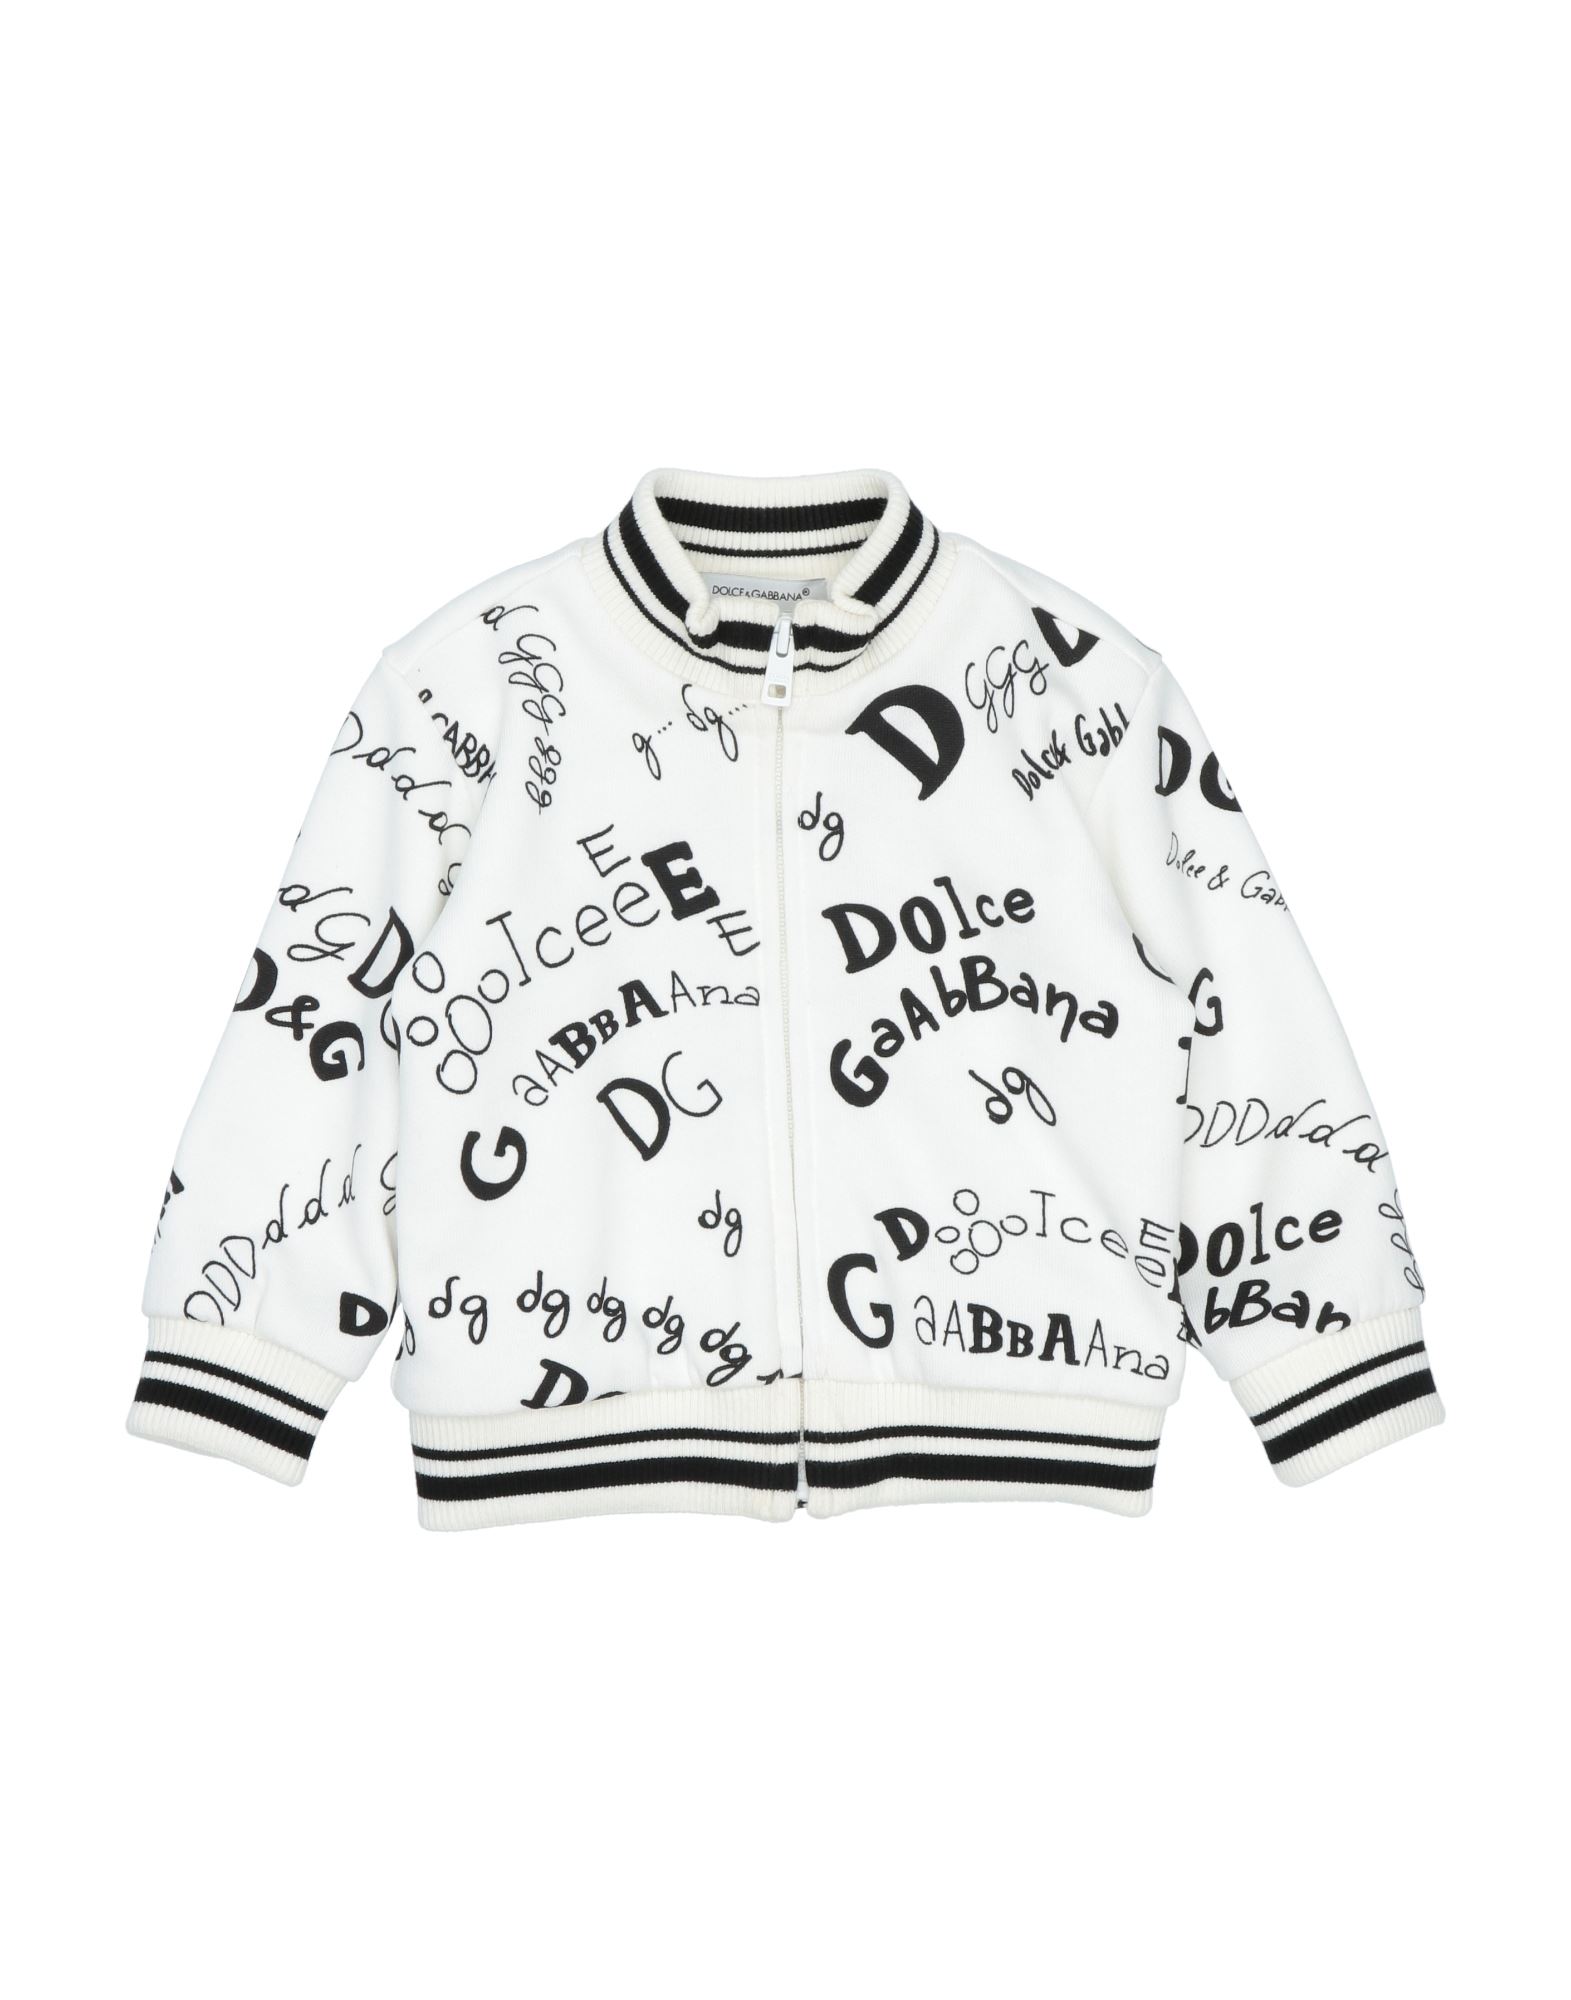 Dolce & Gabbana Kids'  Newborn Boy Sweatshirt White Size 3 Cotton